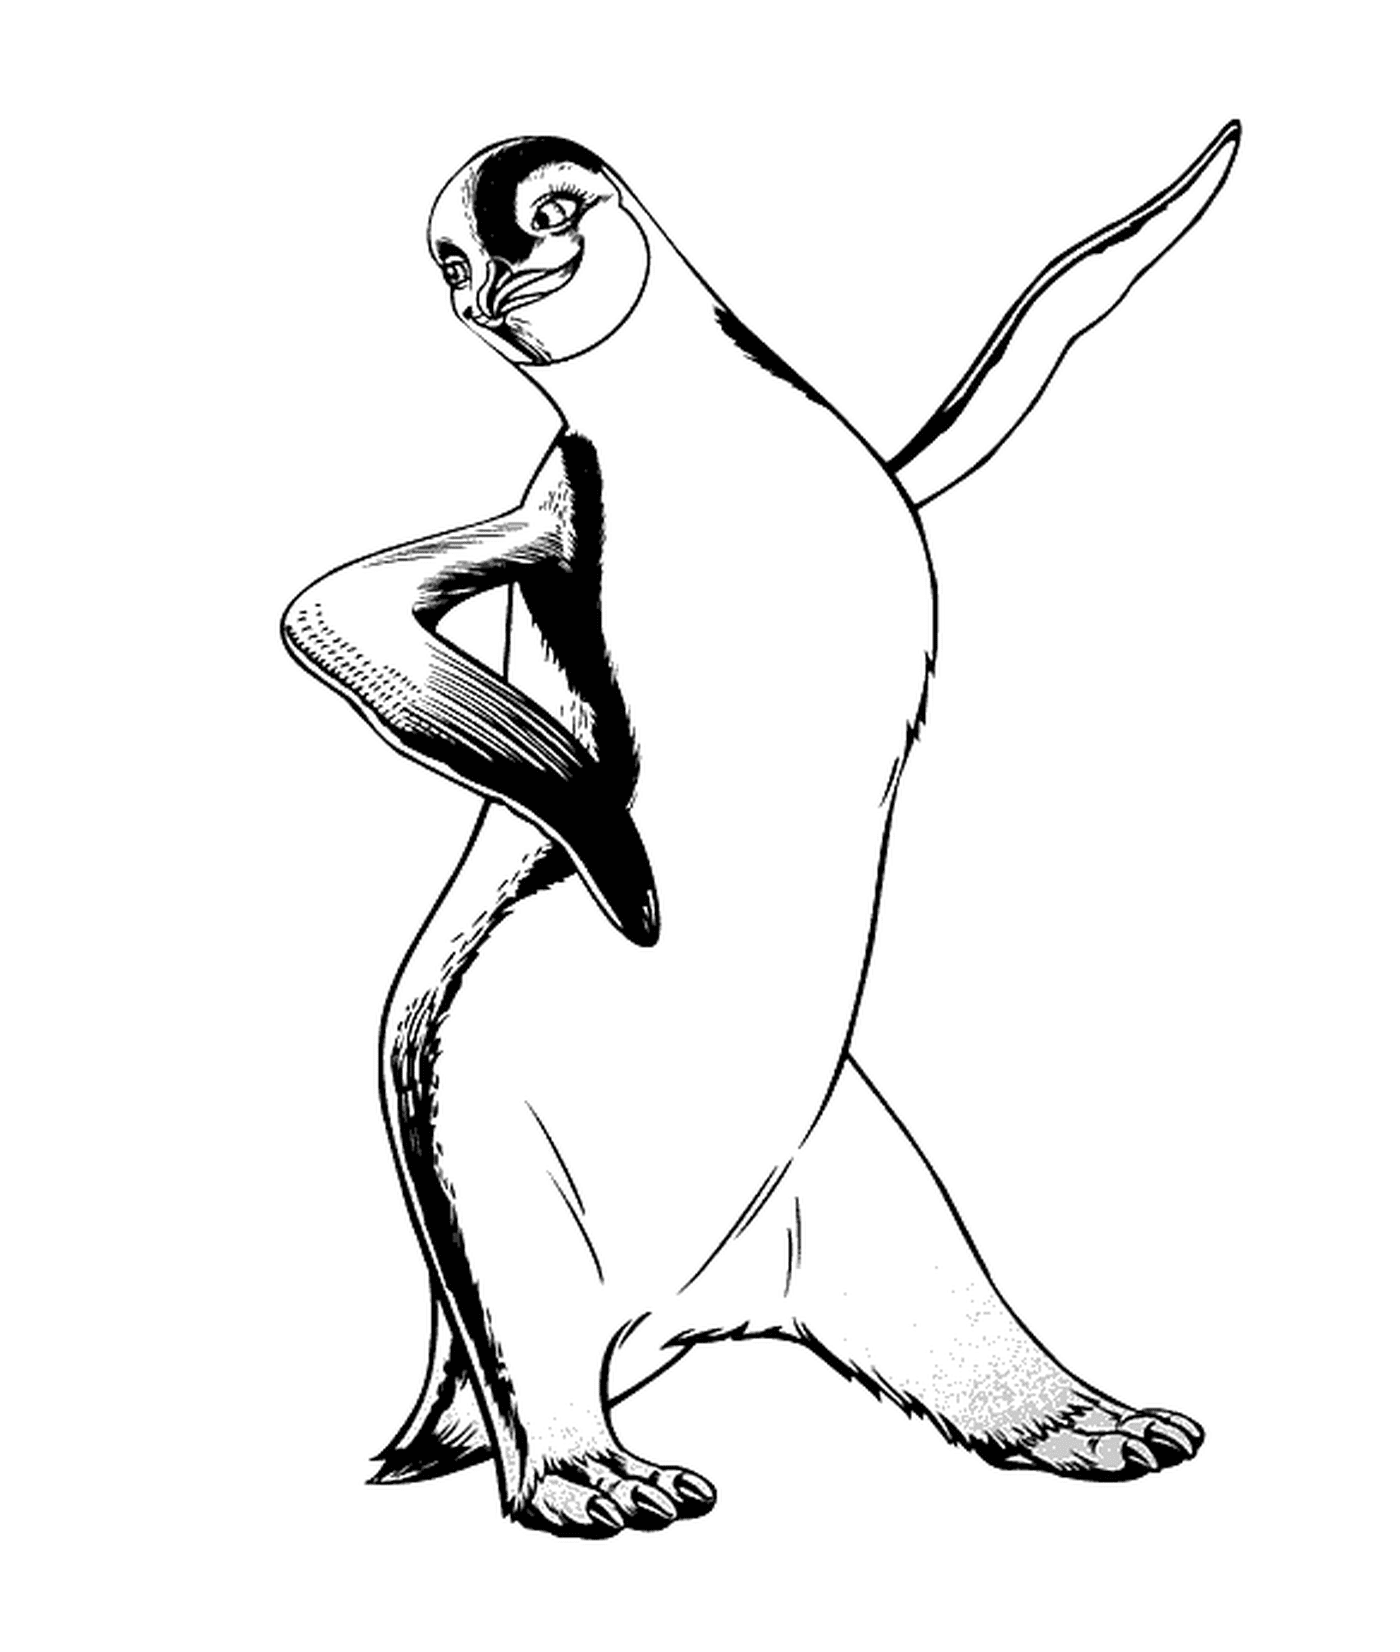  Pinguino che balla con entusiasmo 